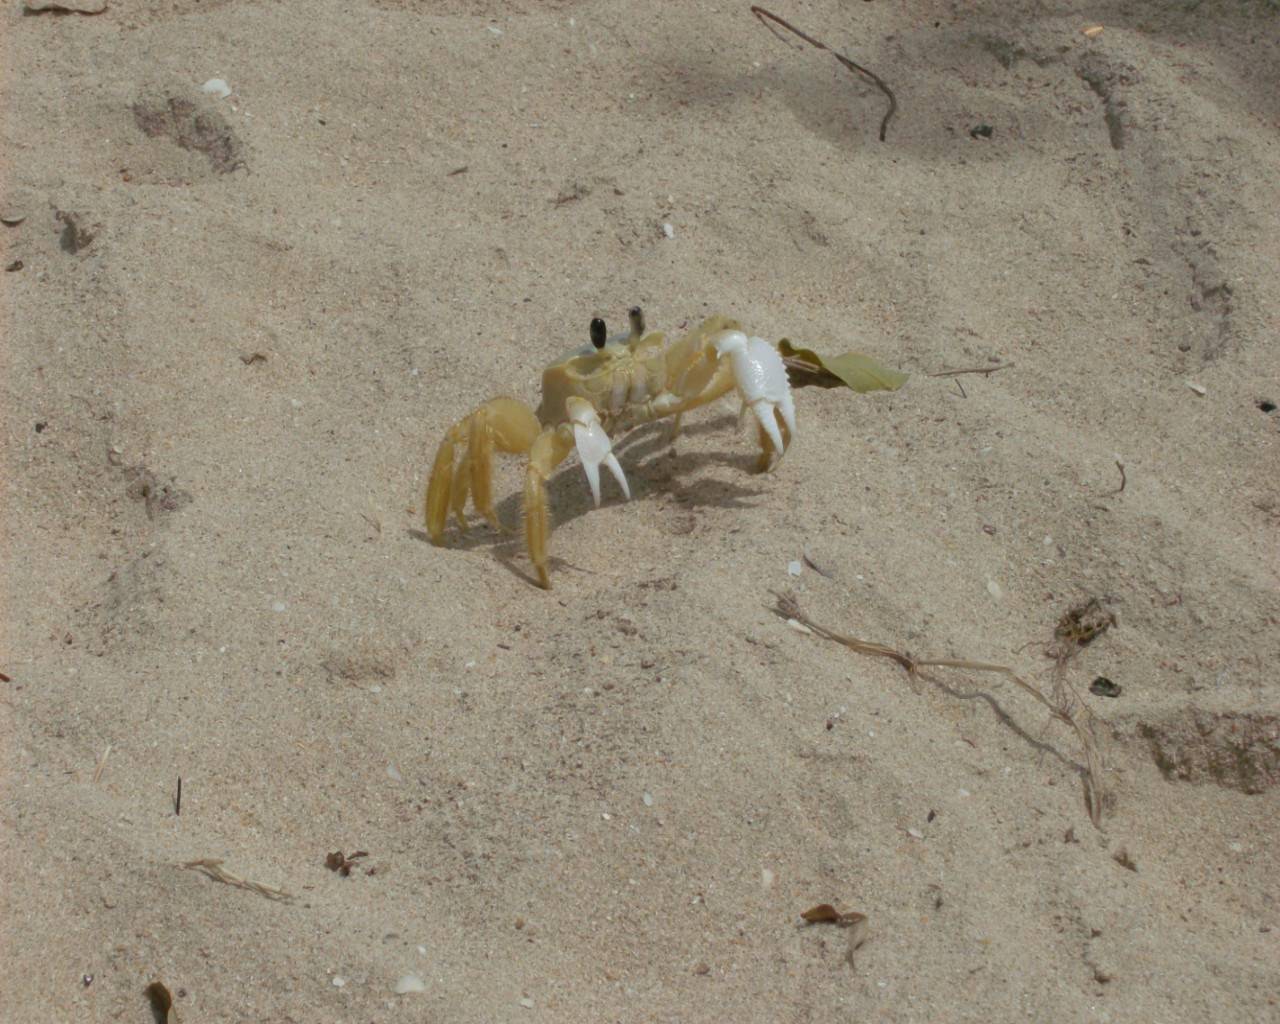 Crustaces a beach attack